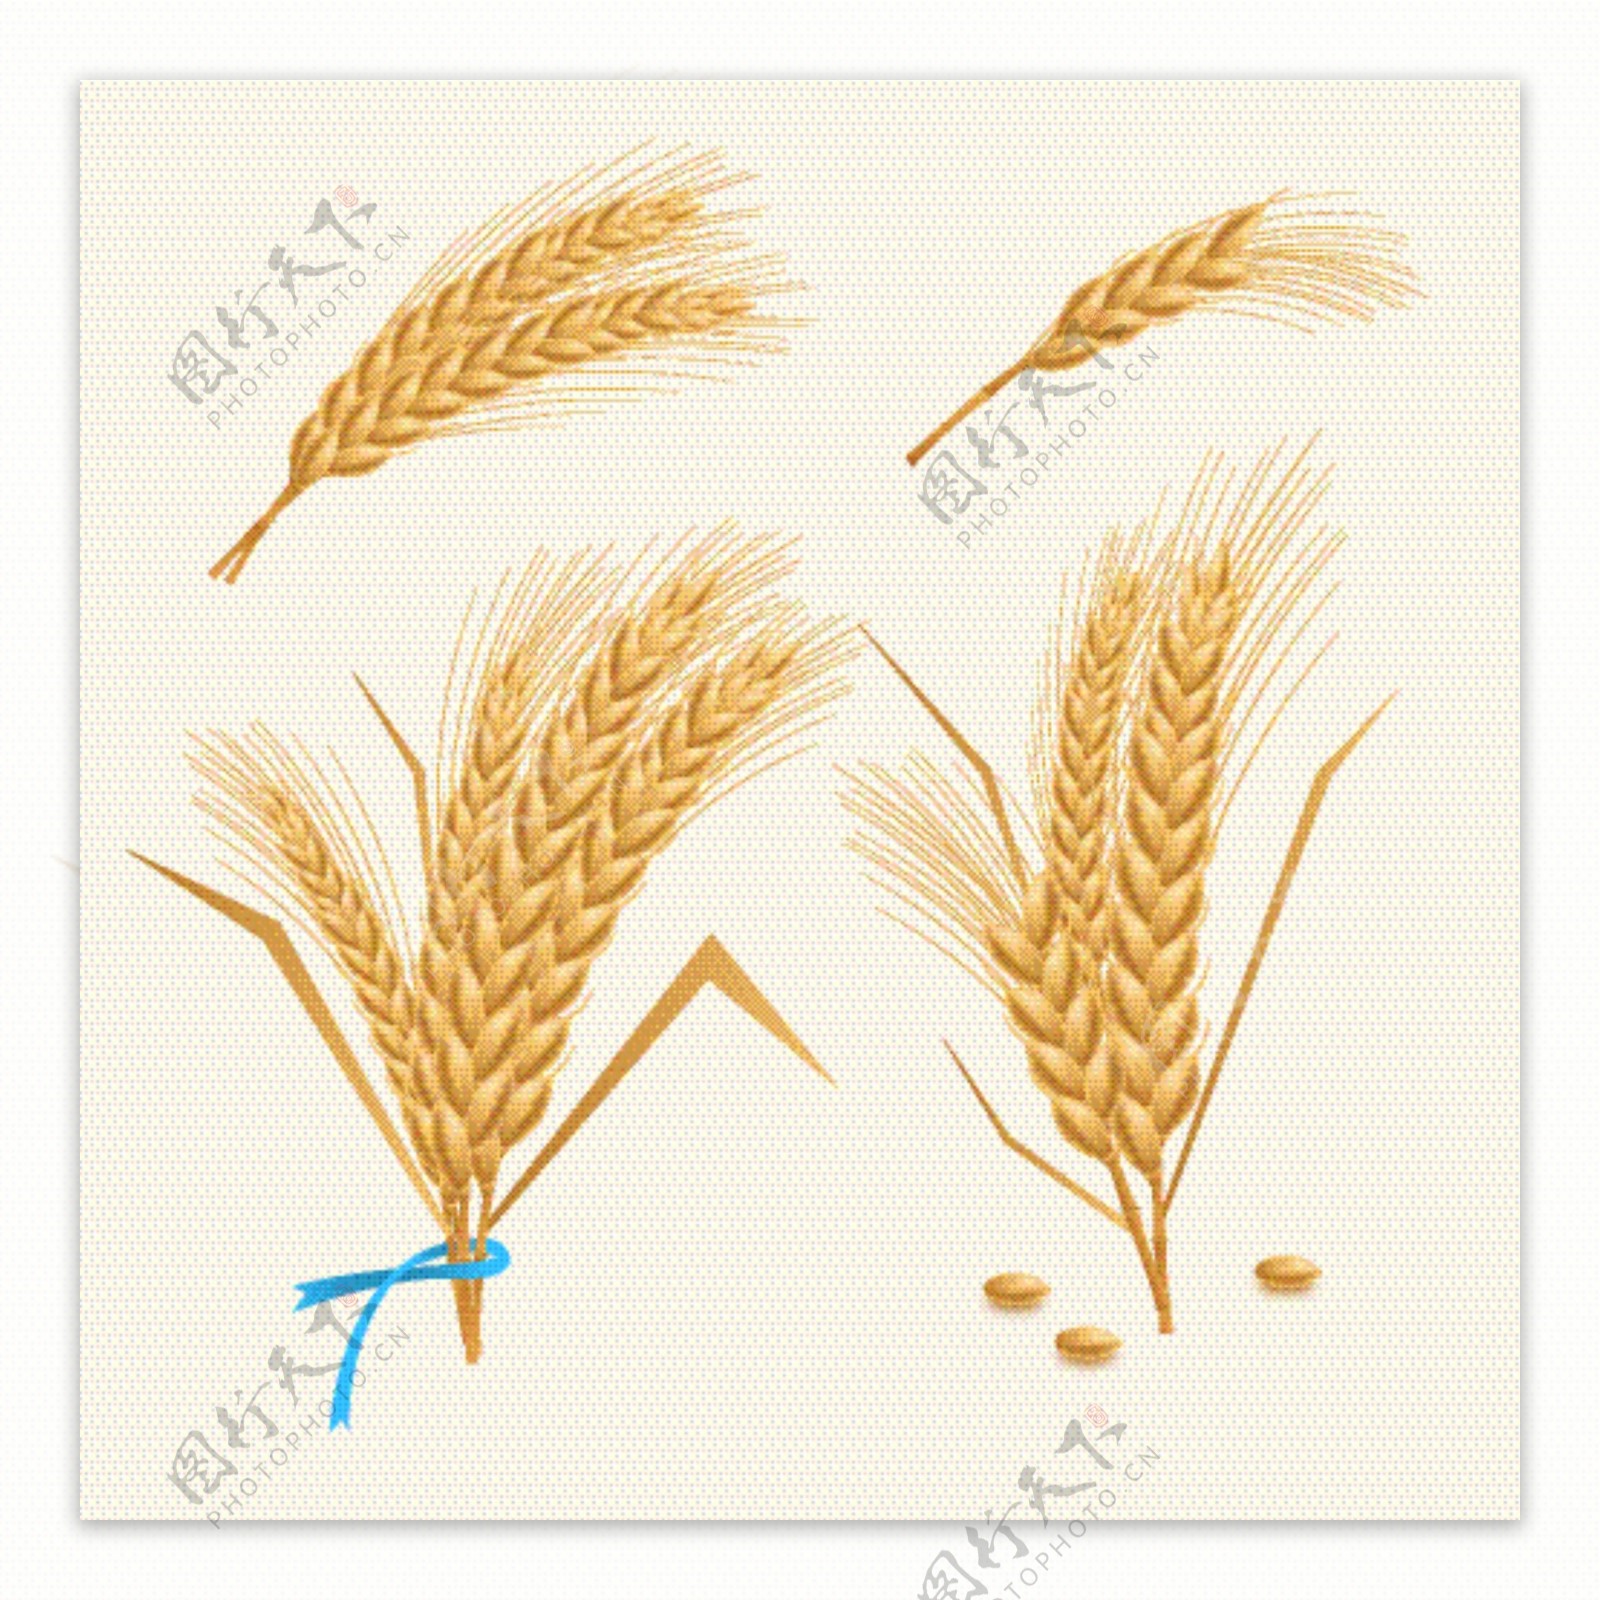 创意小麦束插画矢量图